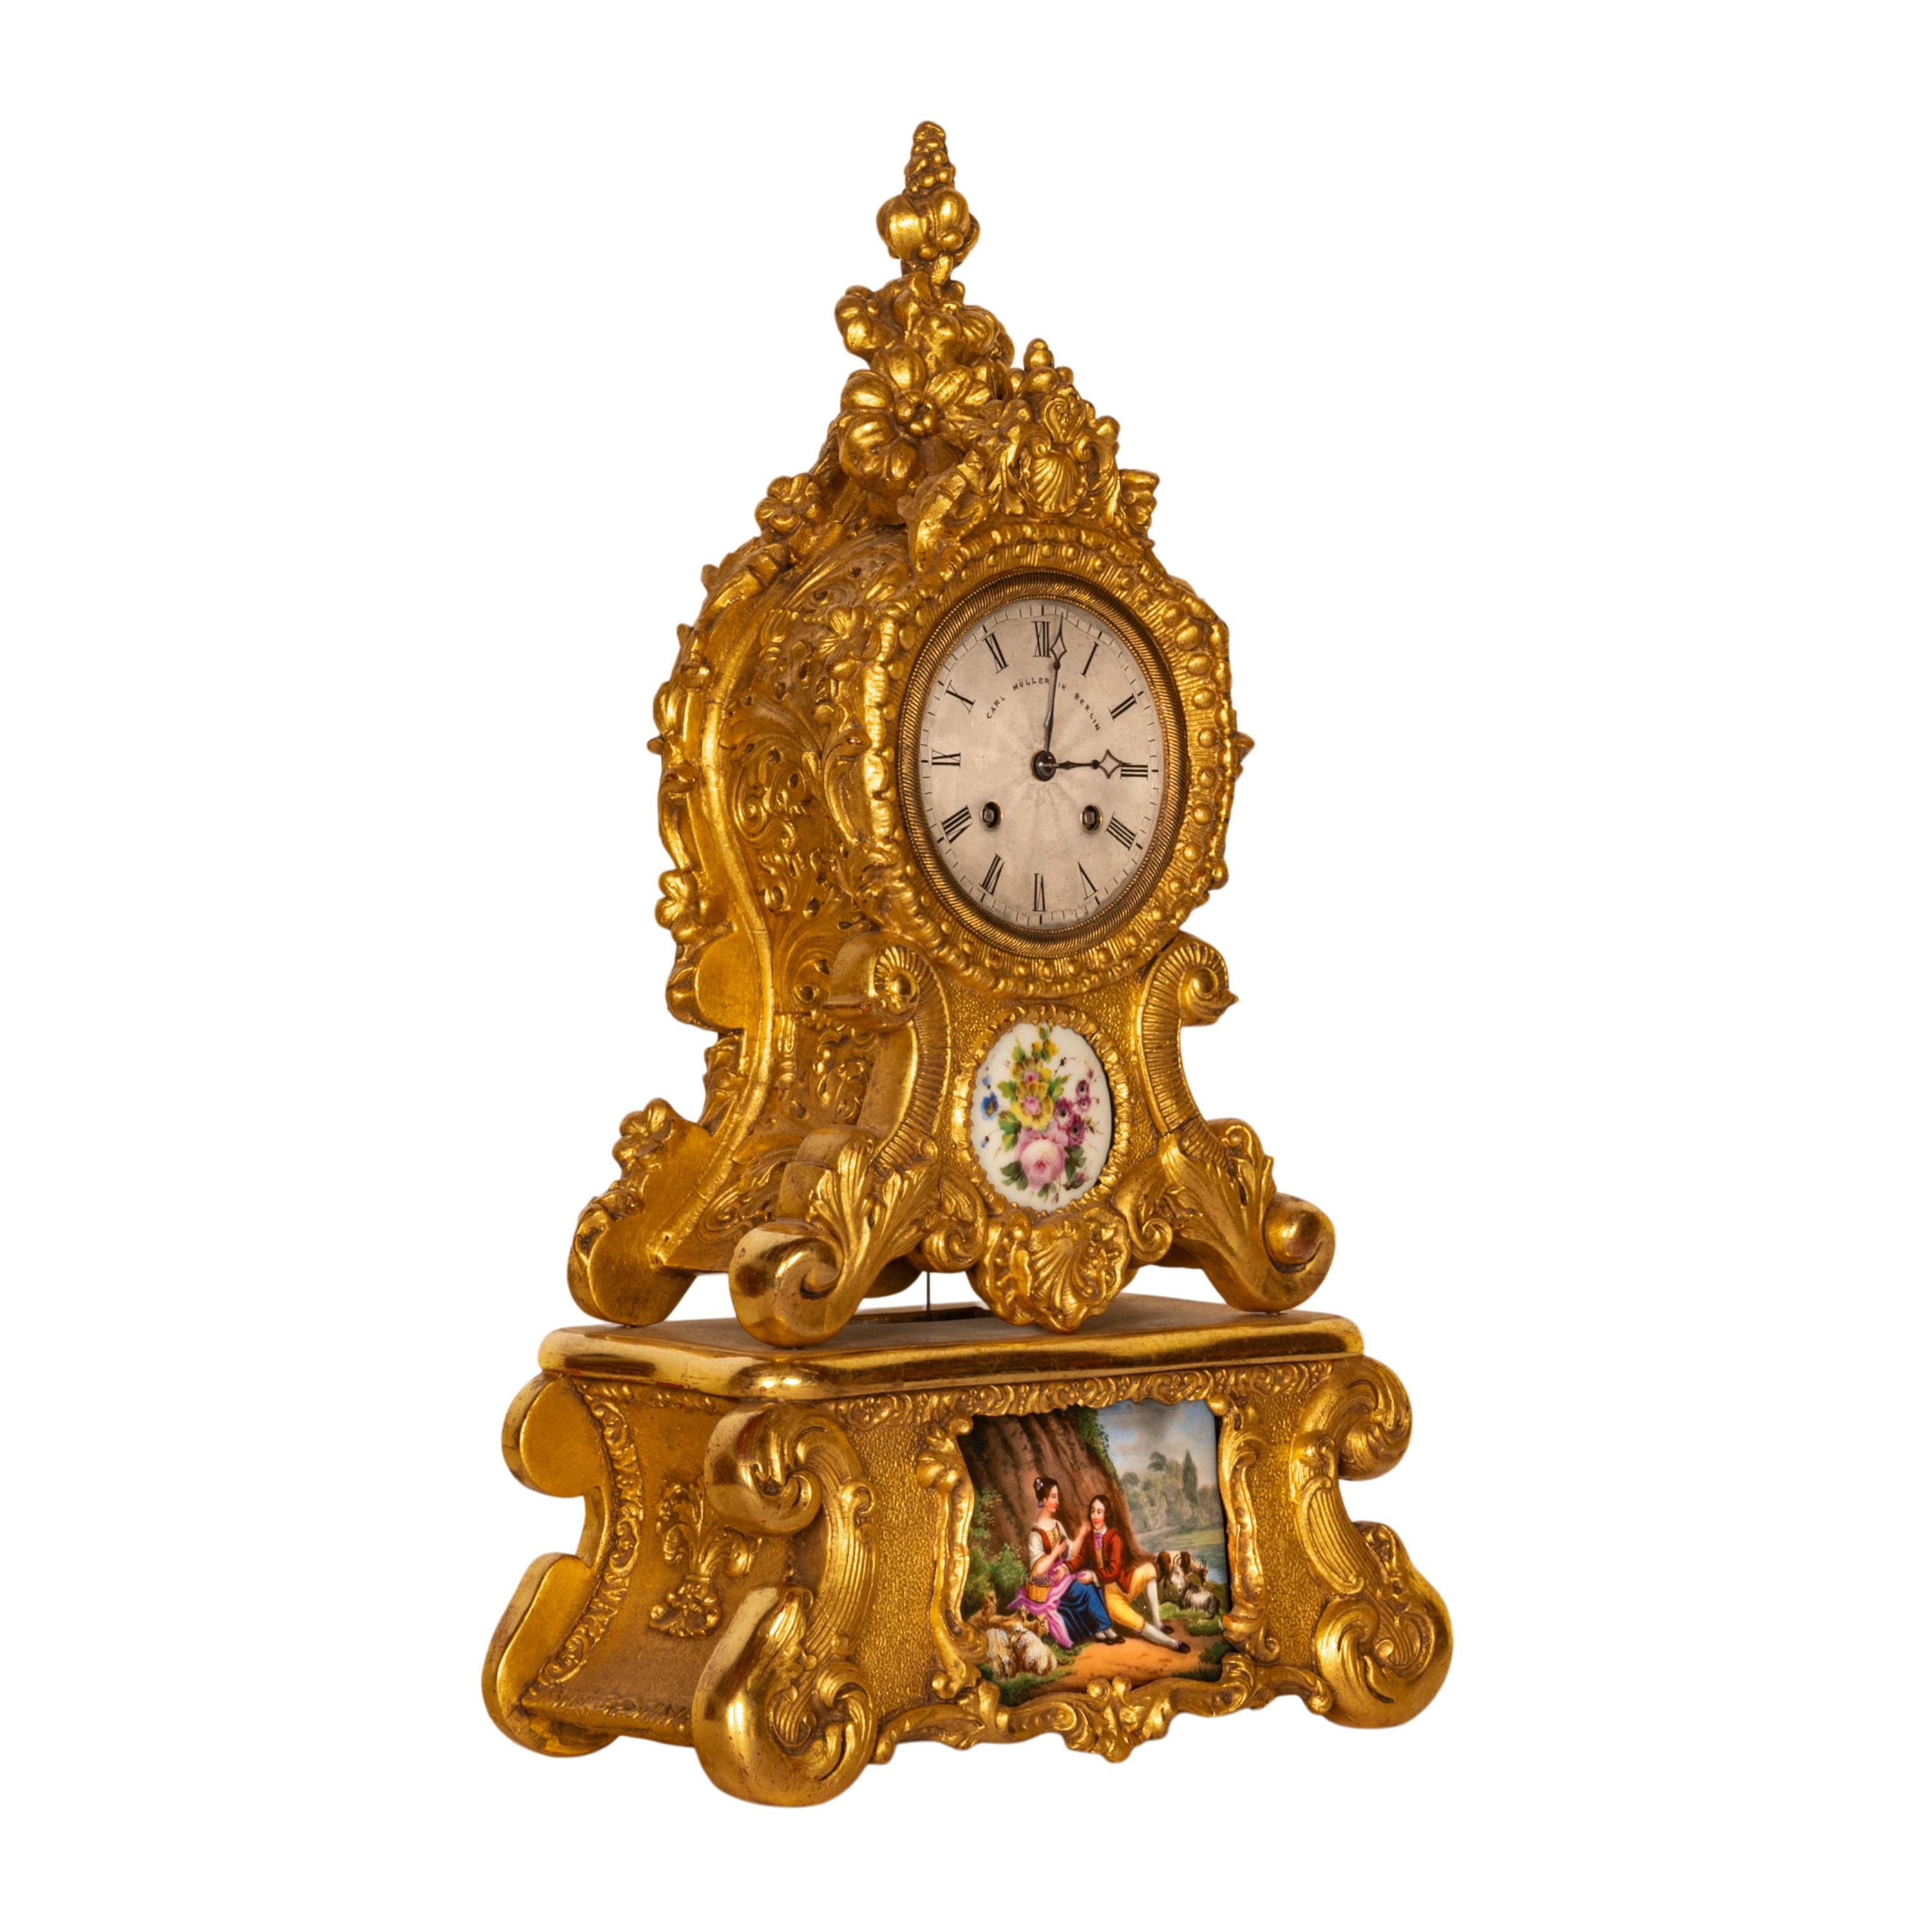 Une belle horloge de cheminée française ancienne à huit jours, dorée et équipée de plaques en porcelaine de Sèvres, vers 1830.
Pendule à suspension en soie de l'époque française, avec un mouvement à heure et à sonnerie de huit jours, sonnant